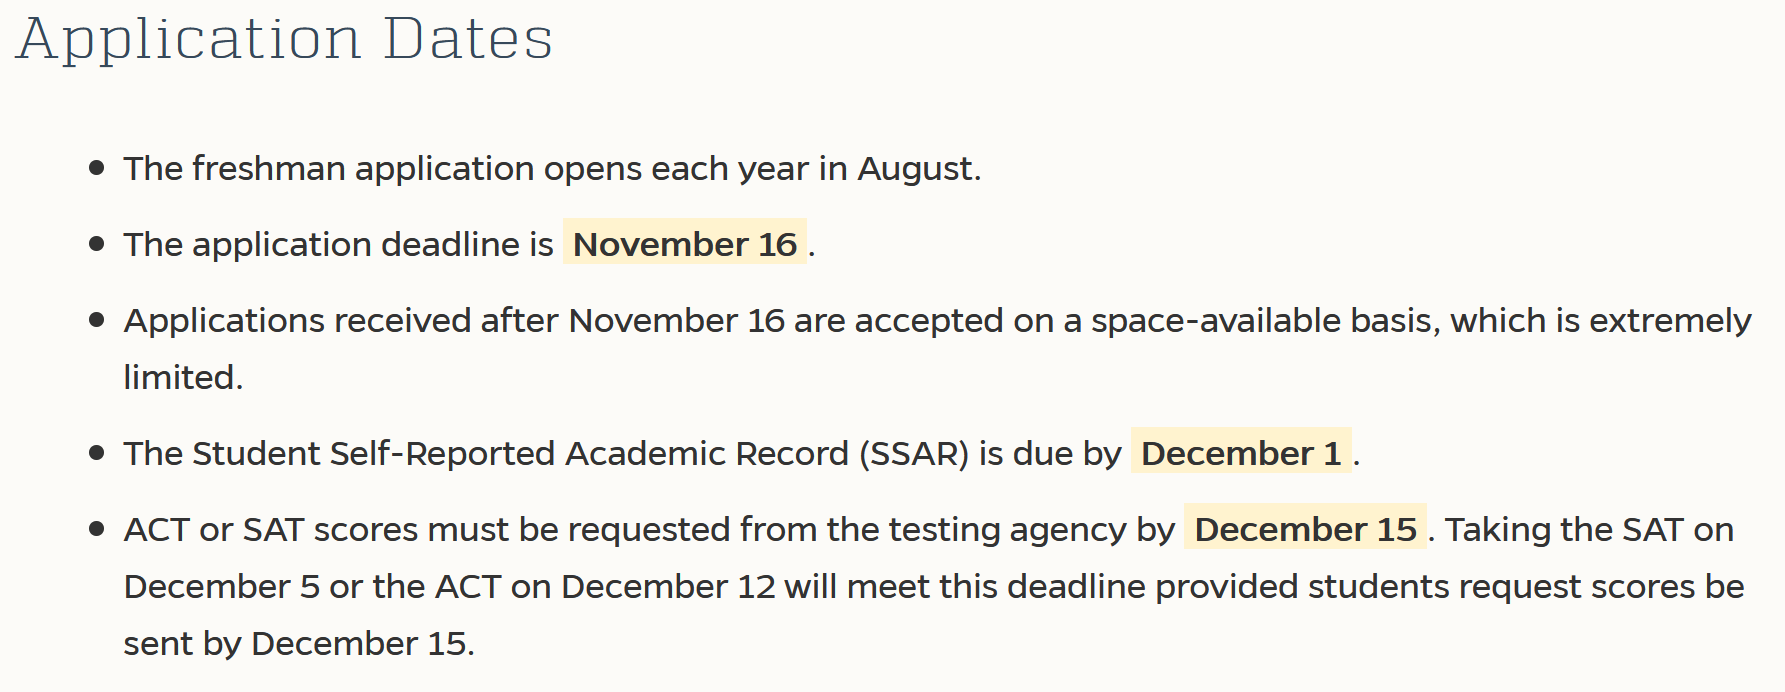 佛罗里达大学申请截止推迟至11月16日